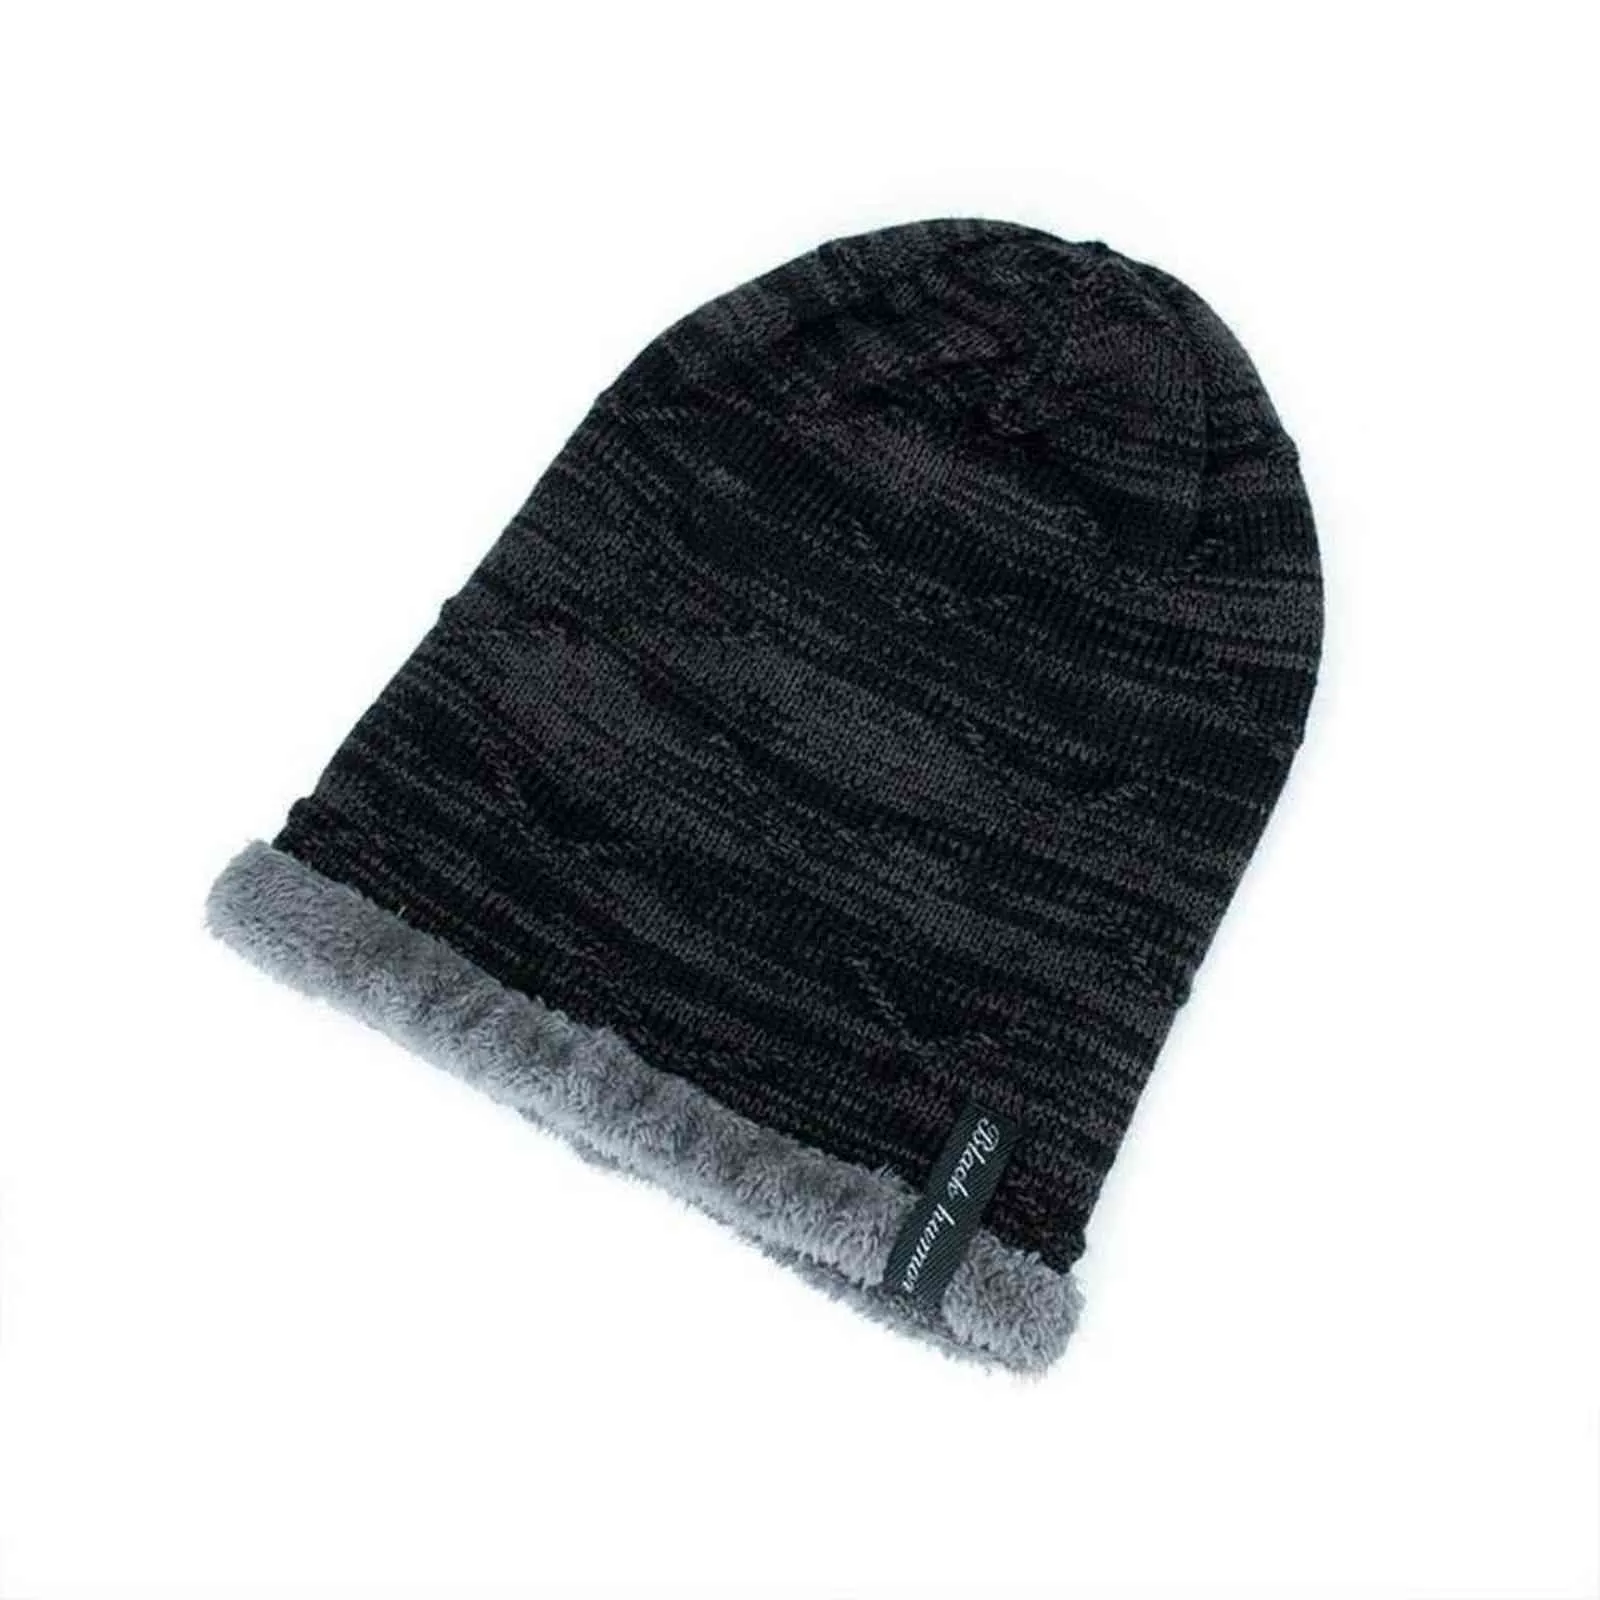 2021ファッションメンズの冬の帽子ニット黒い帽子秋の帽子の厚くて暖かくてボンネットの頭蓋骨の甘いニットビーニーコットンY21111